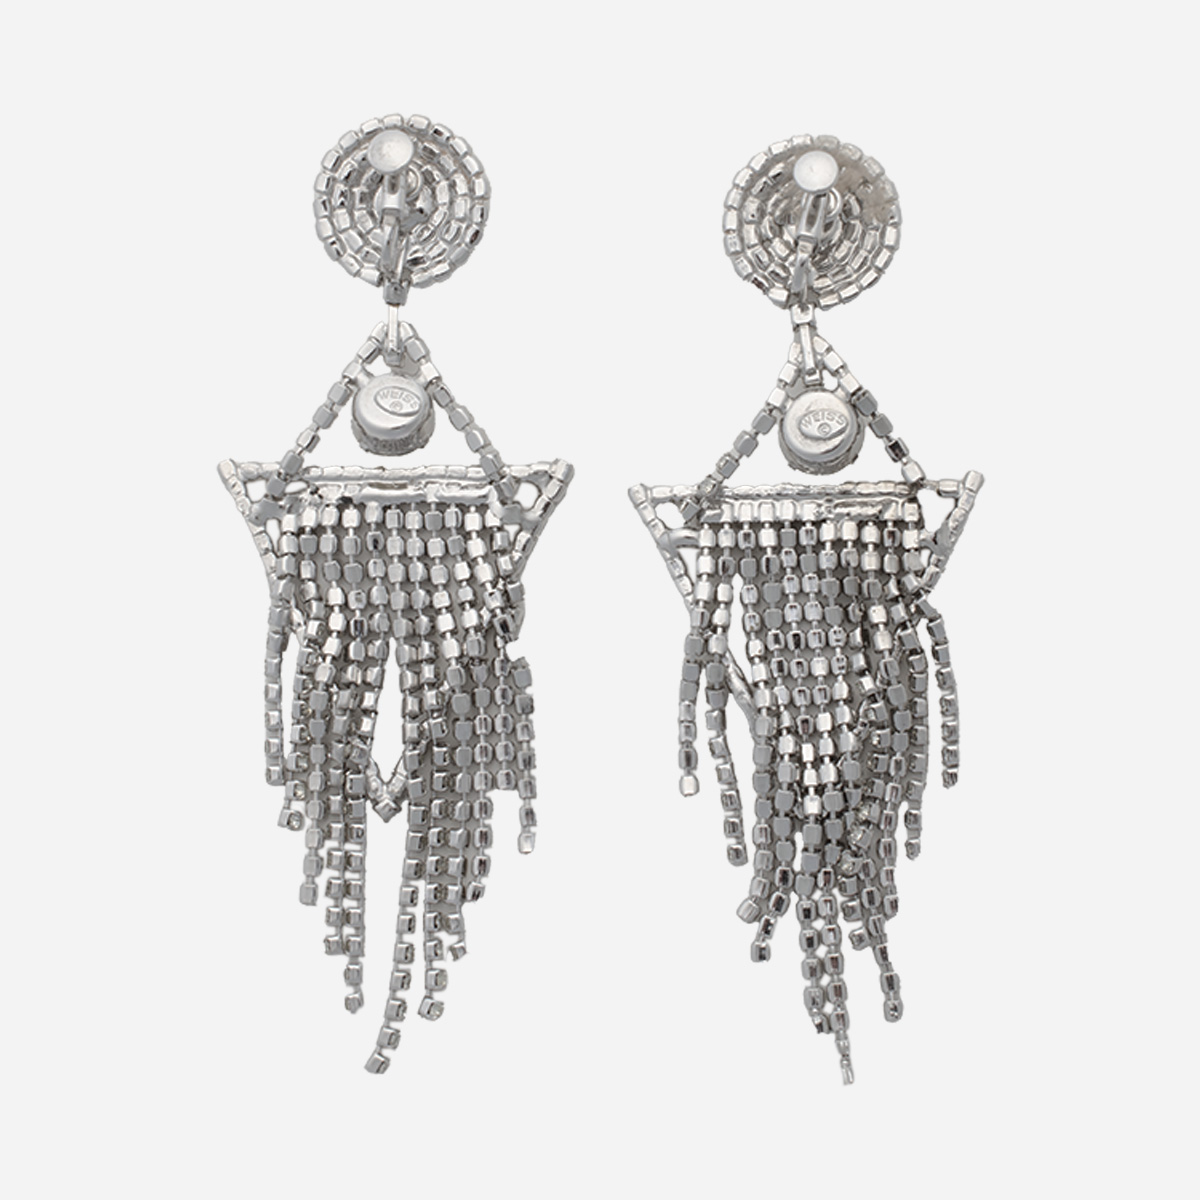 Weiss vintage jewelry hallmark